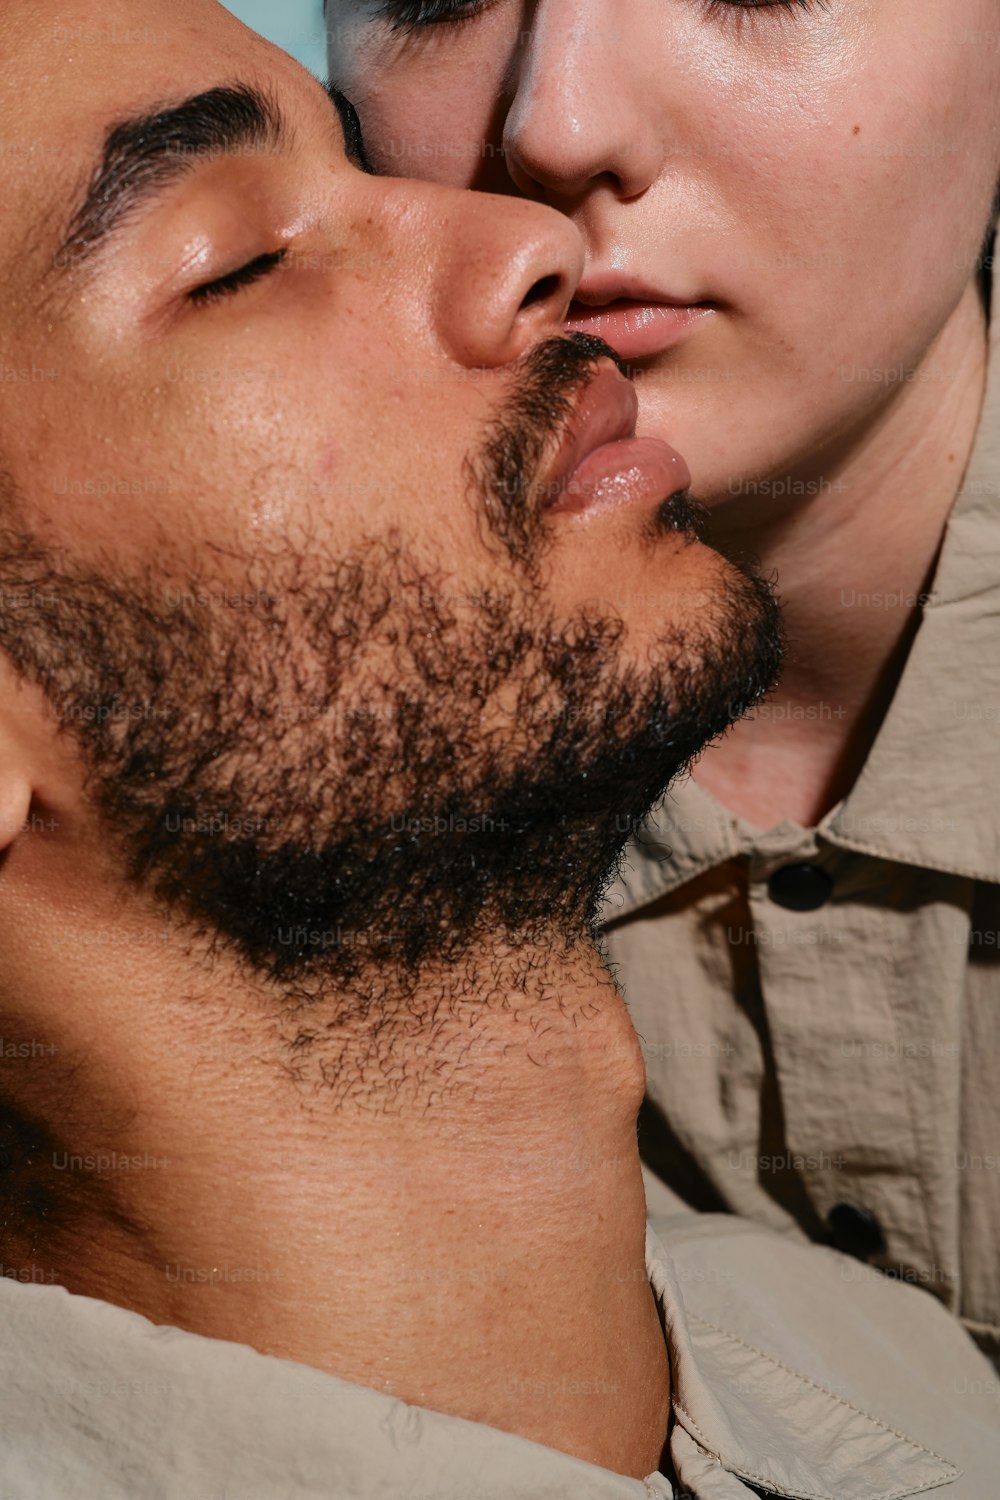 un hombre besando la mejilla de otro hombre con los ojos cerrados